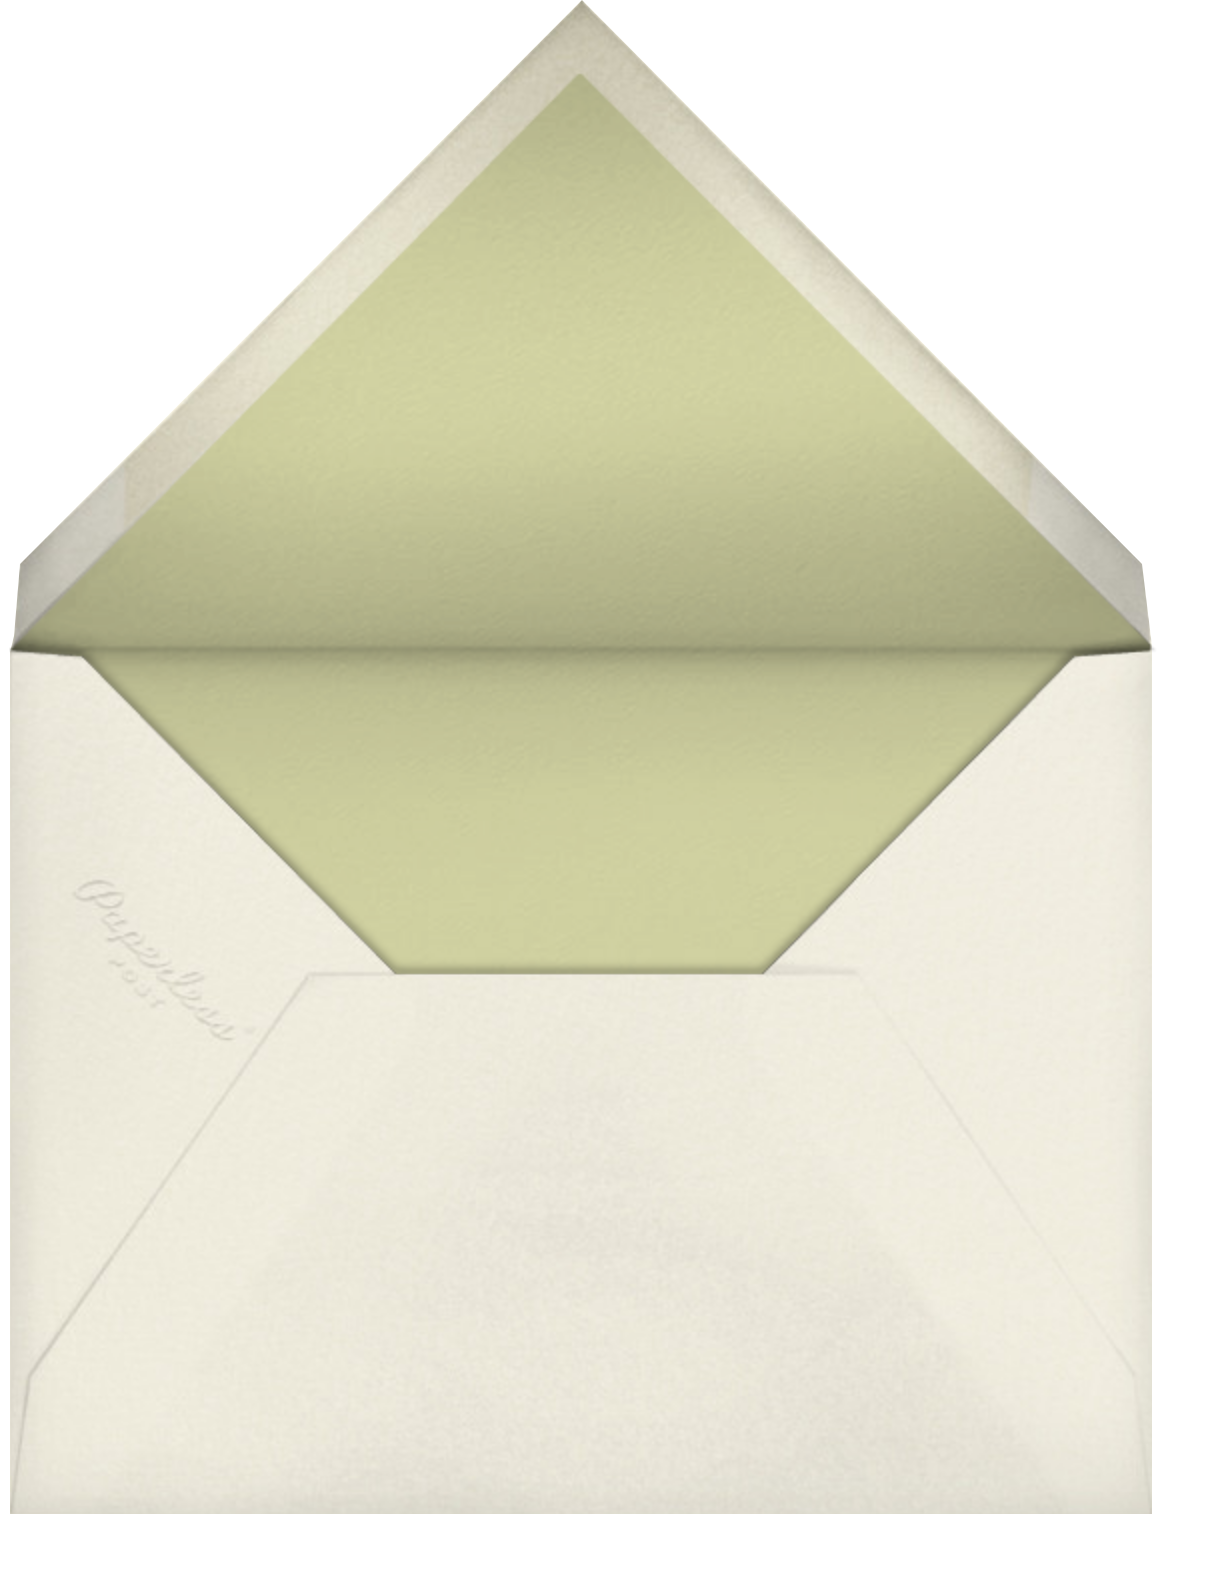 Stamped - Heath - Oscar de la Renta - Envelope